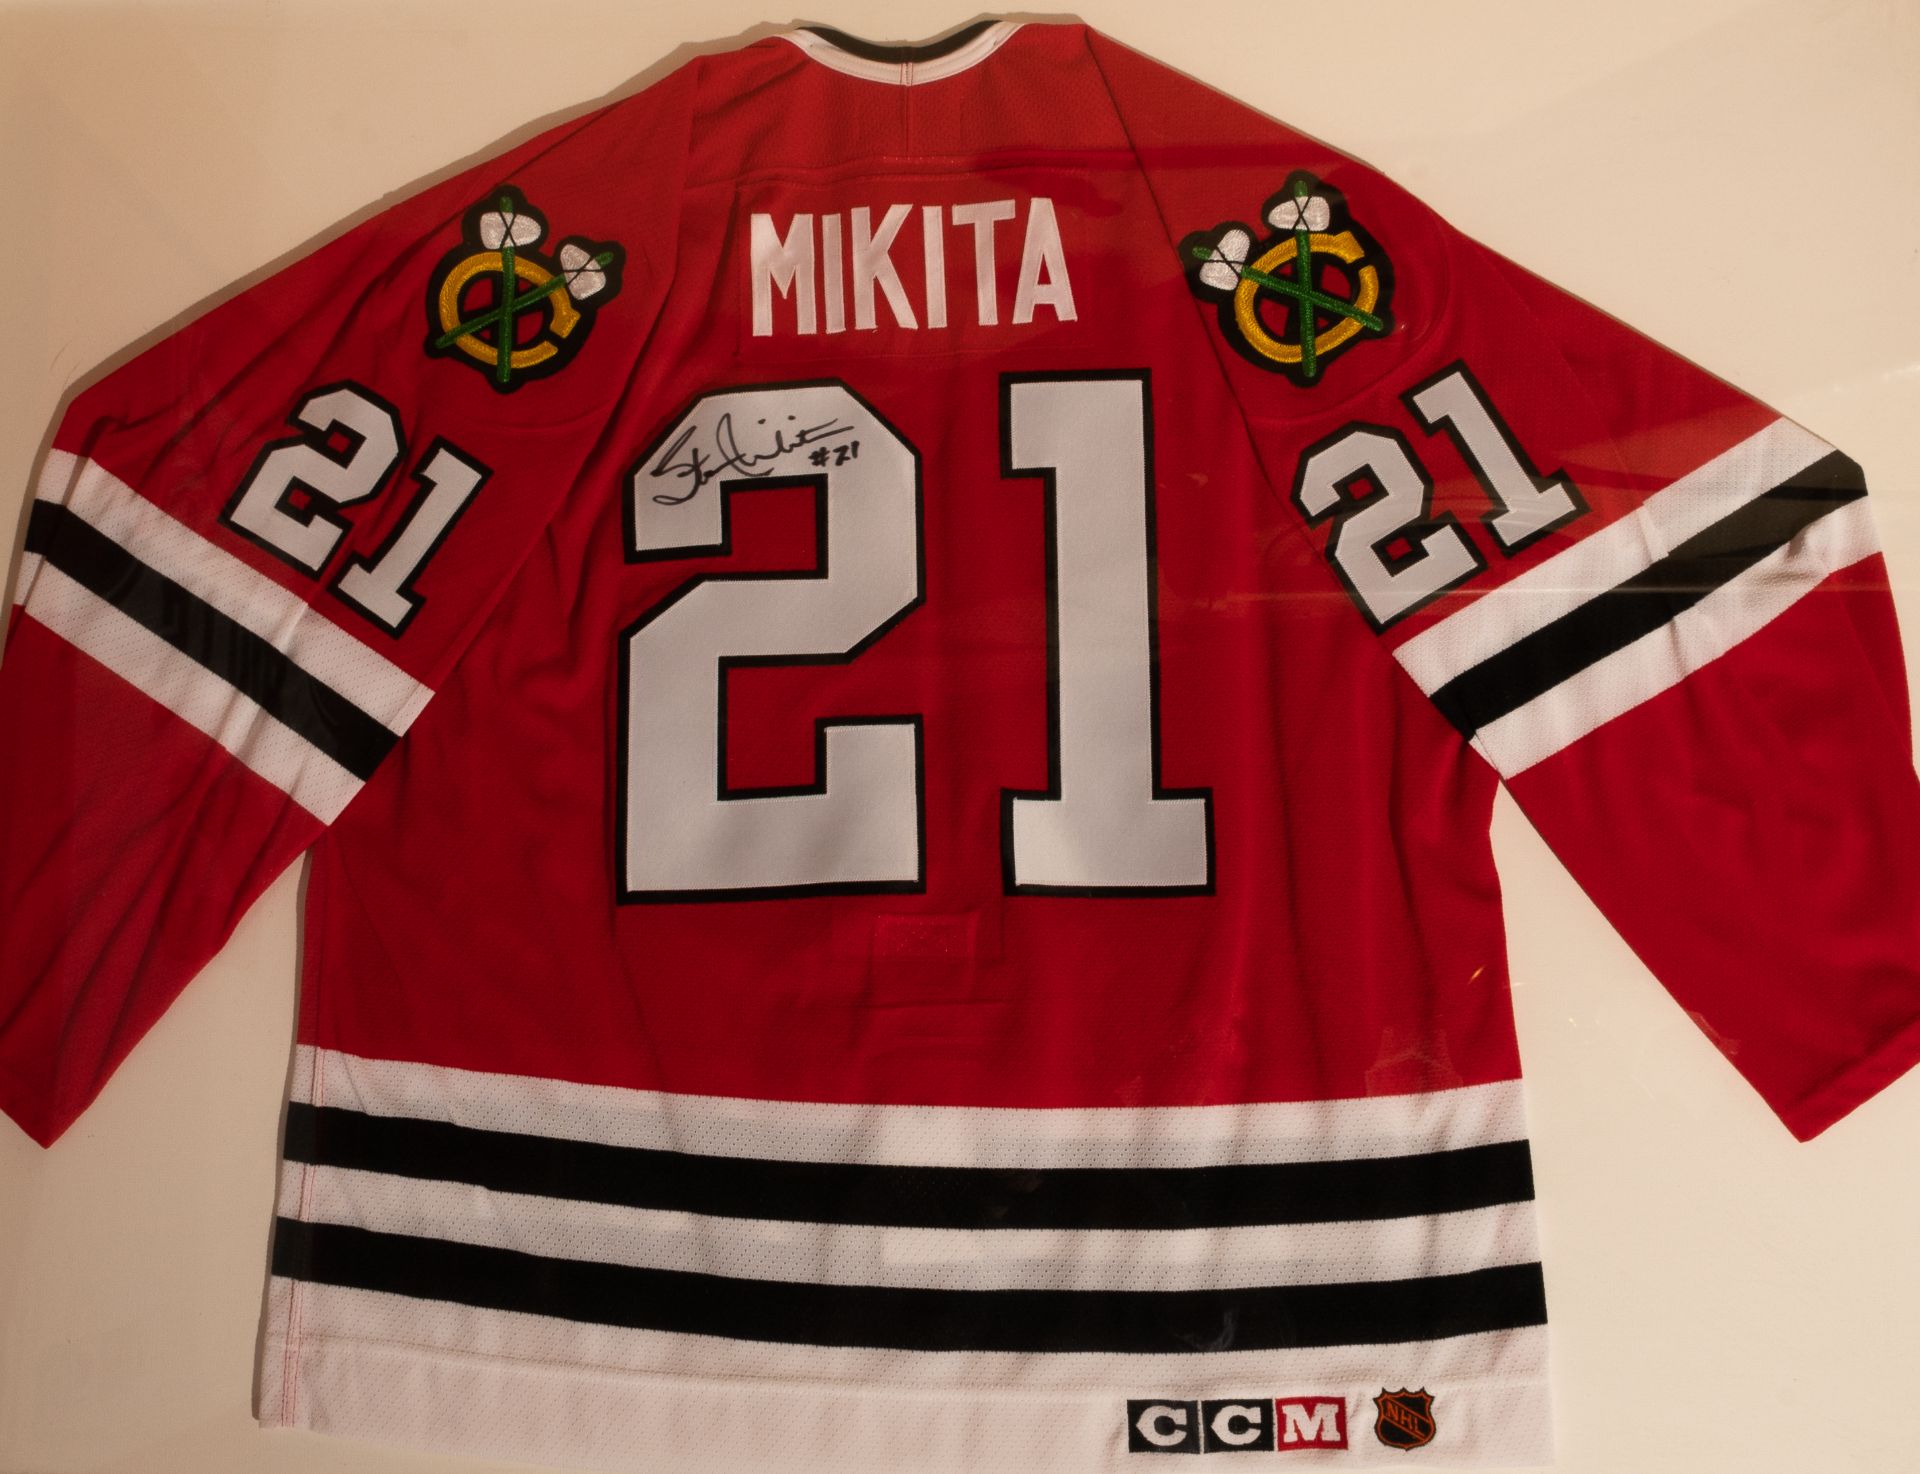 Stan Mikita Chicago Blackhawks Sweater, #21, Signed "Steve Makita #21" Framed 49"x37"